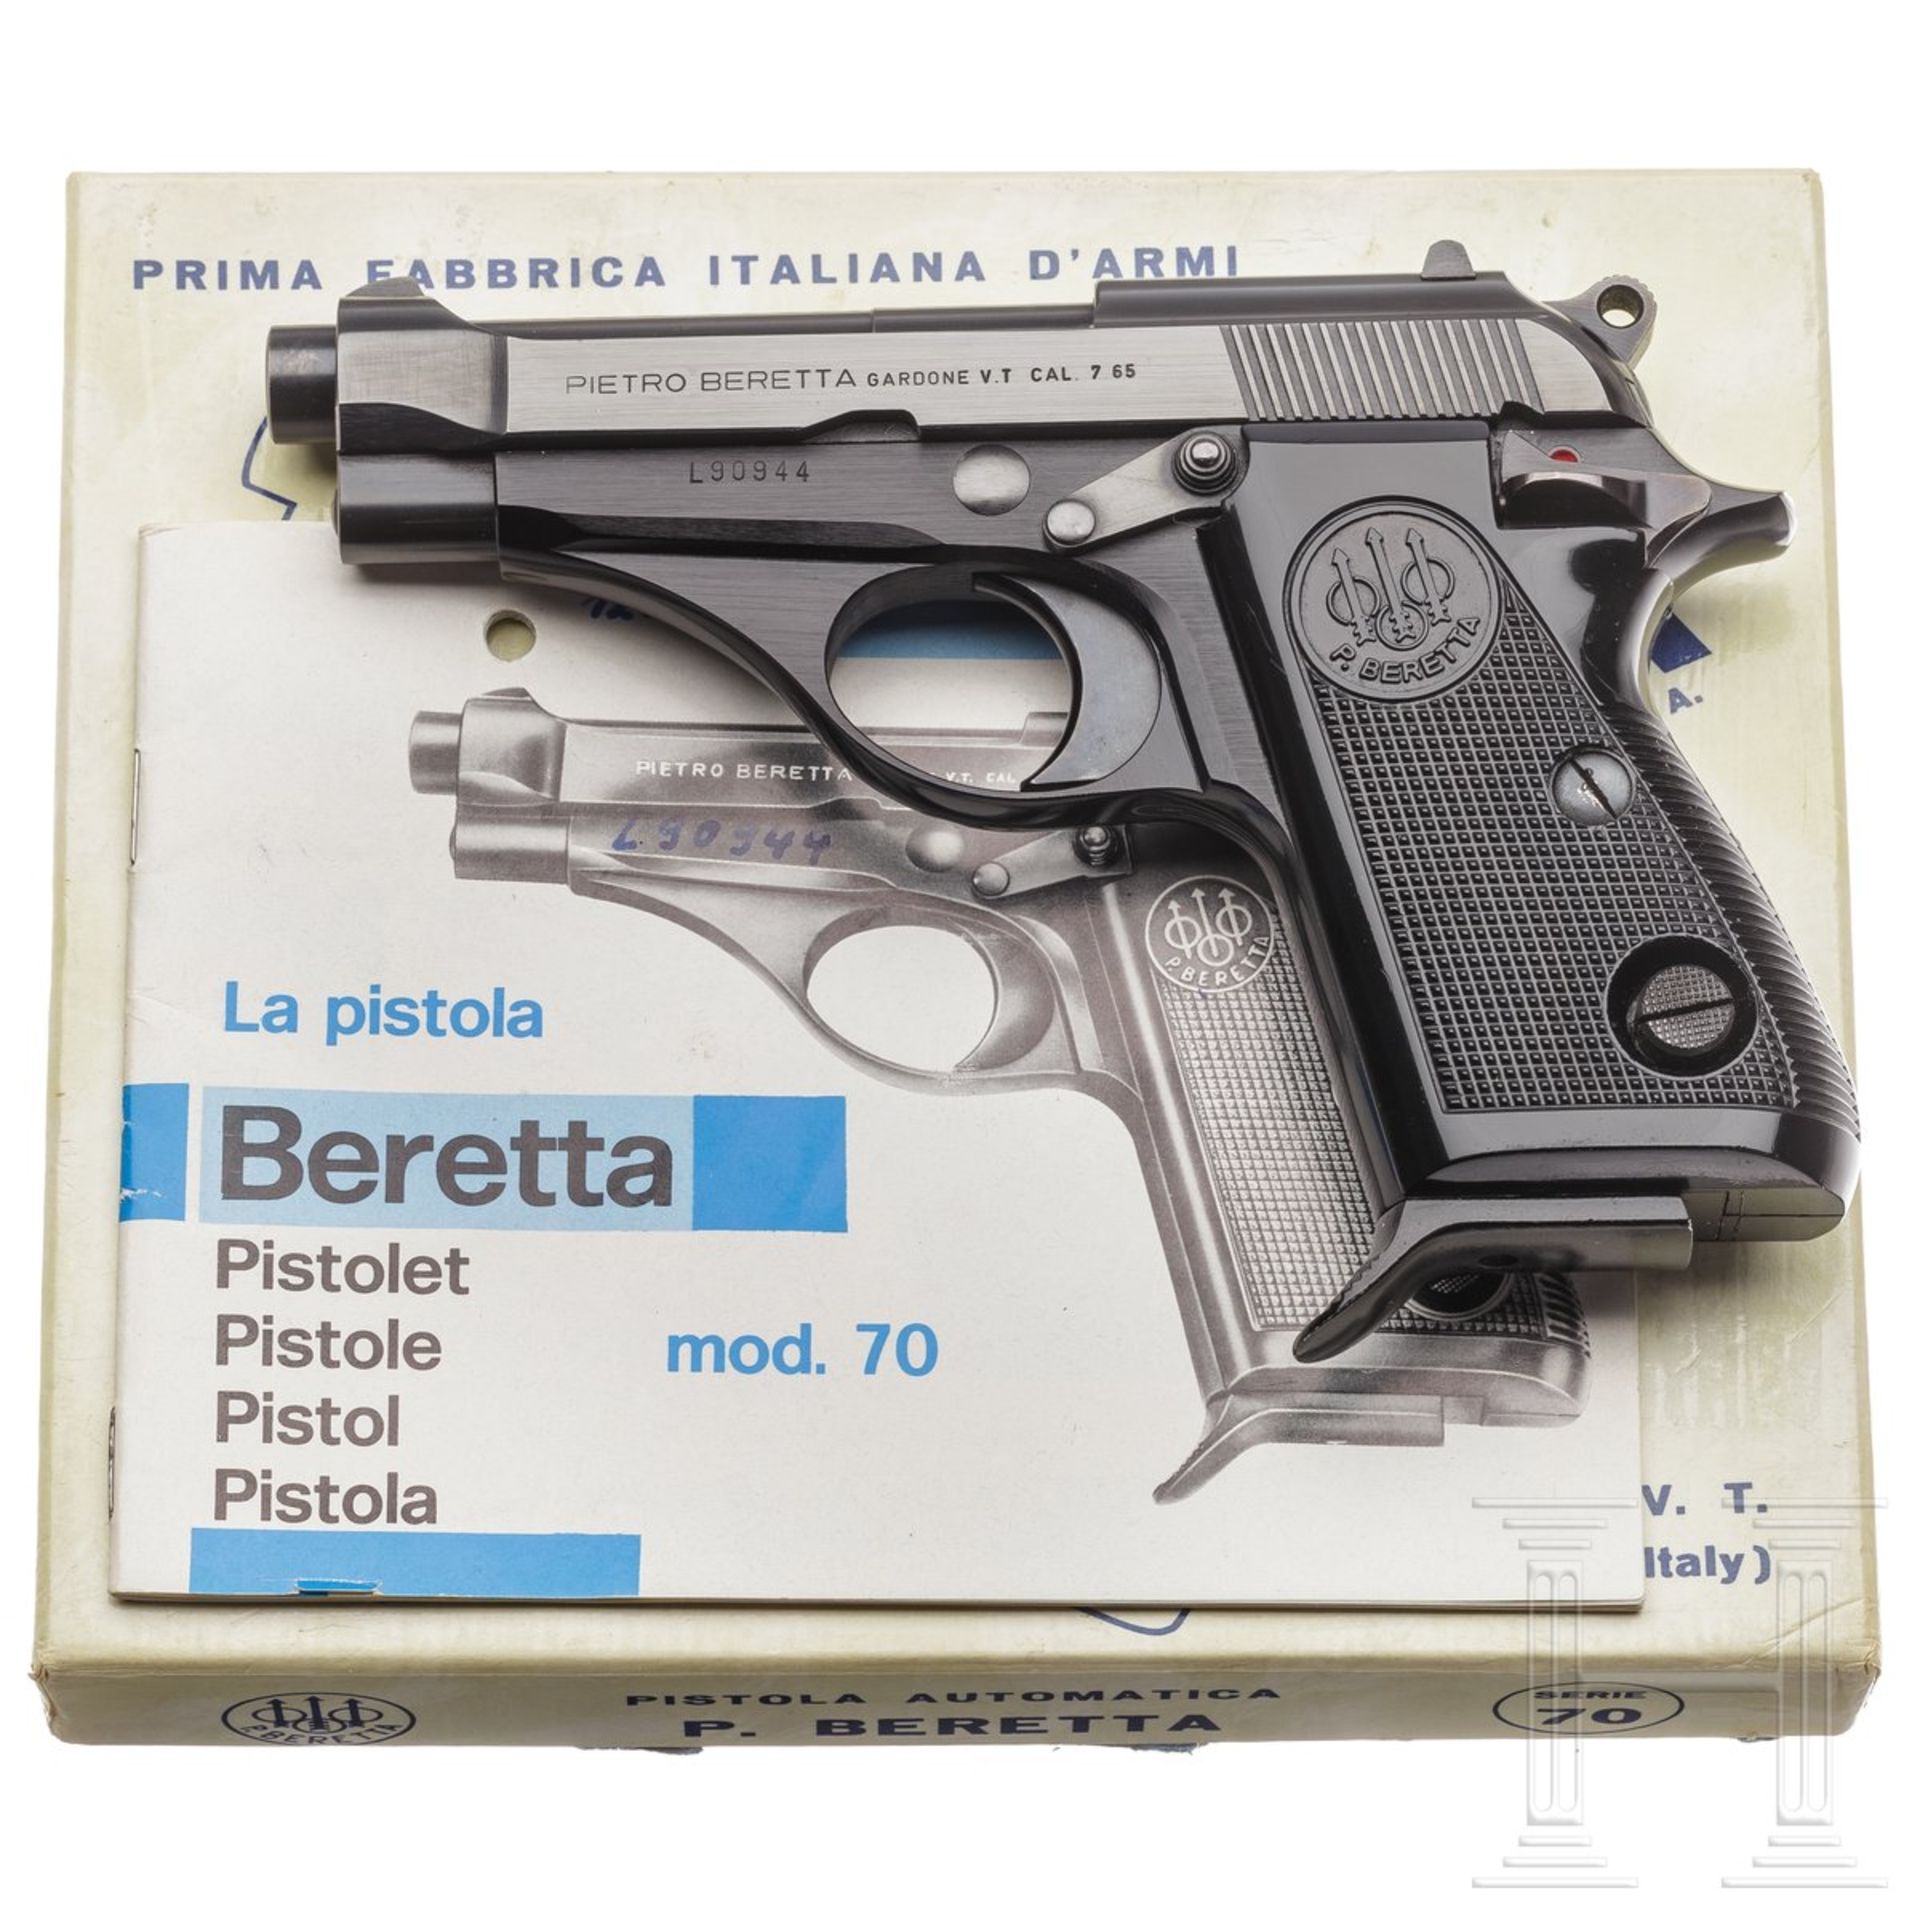 Beretta Mod. 70, späte Ausführung, im Karton